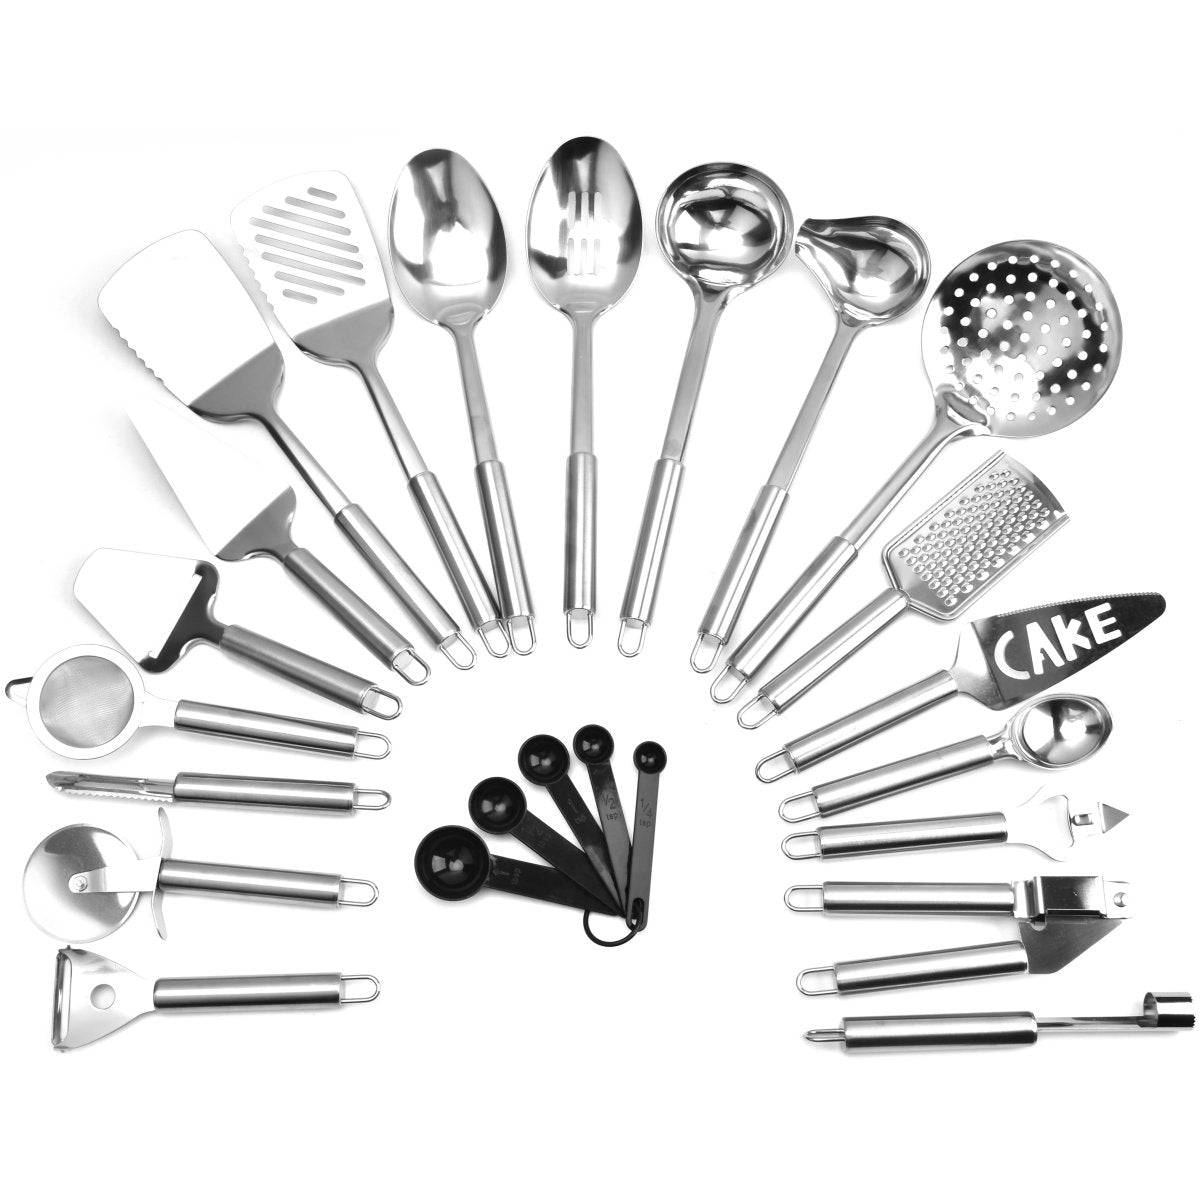 20 Piece Essential Cooking Utensil Kit Stainless Steel Rental